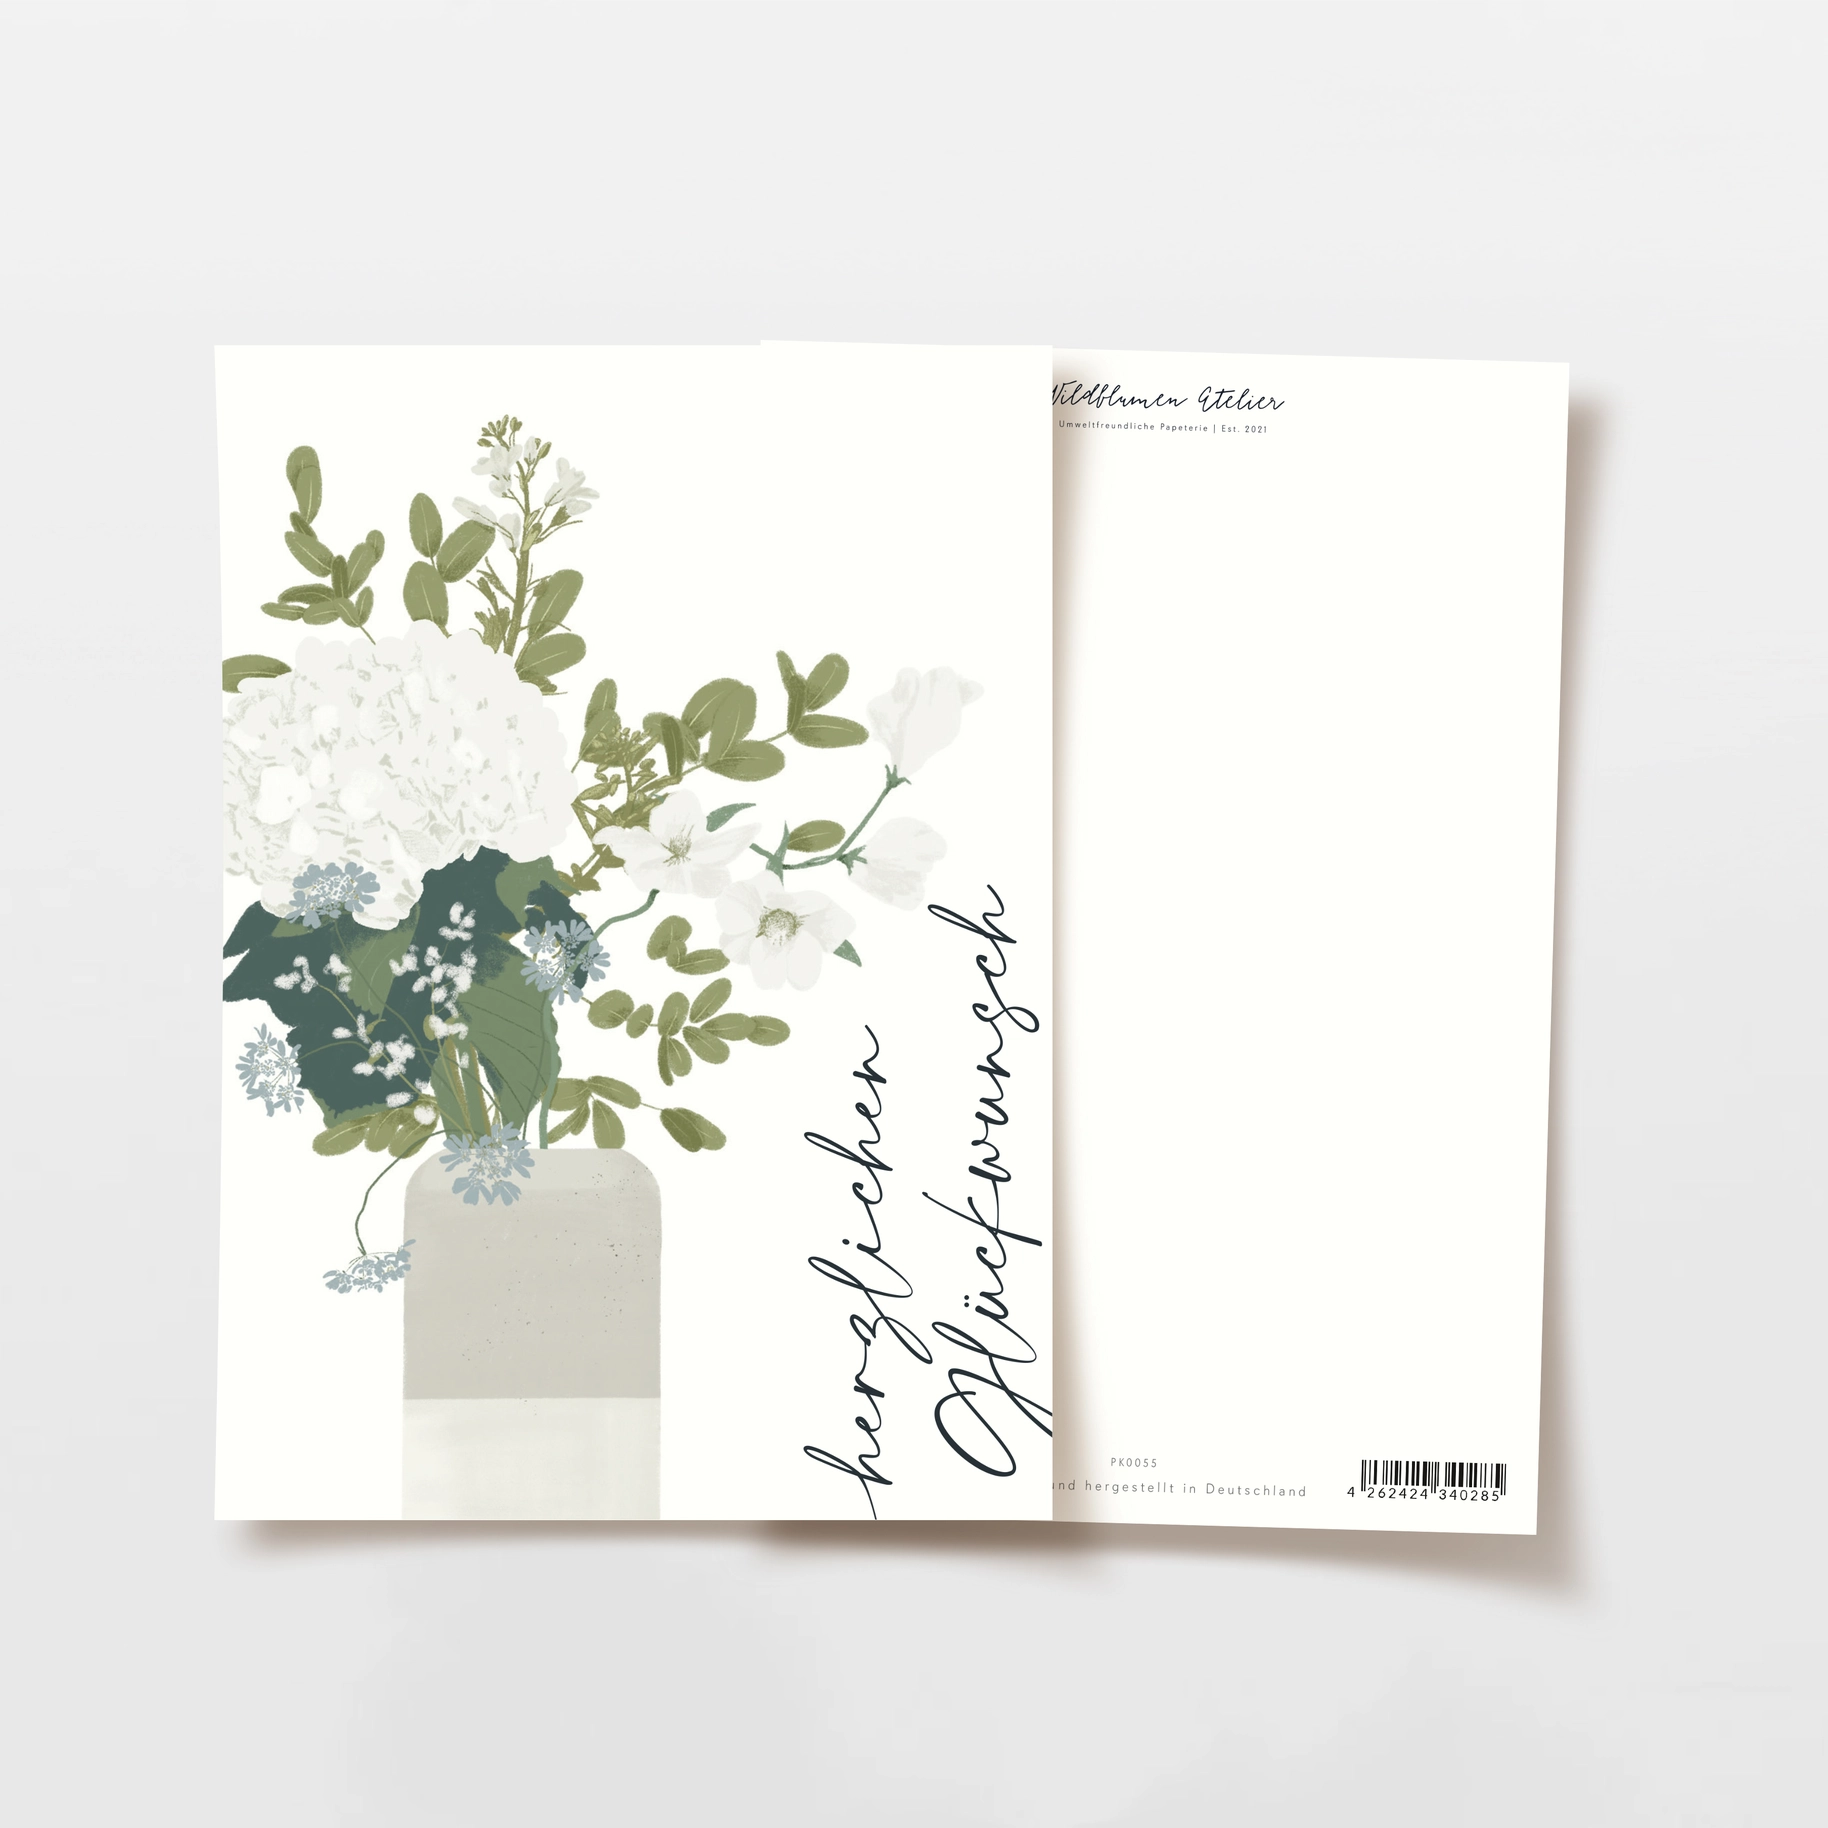 Postkarte Herzlichen Glückwunsch Vasevom Wildblumen Atelier 